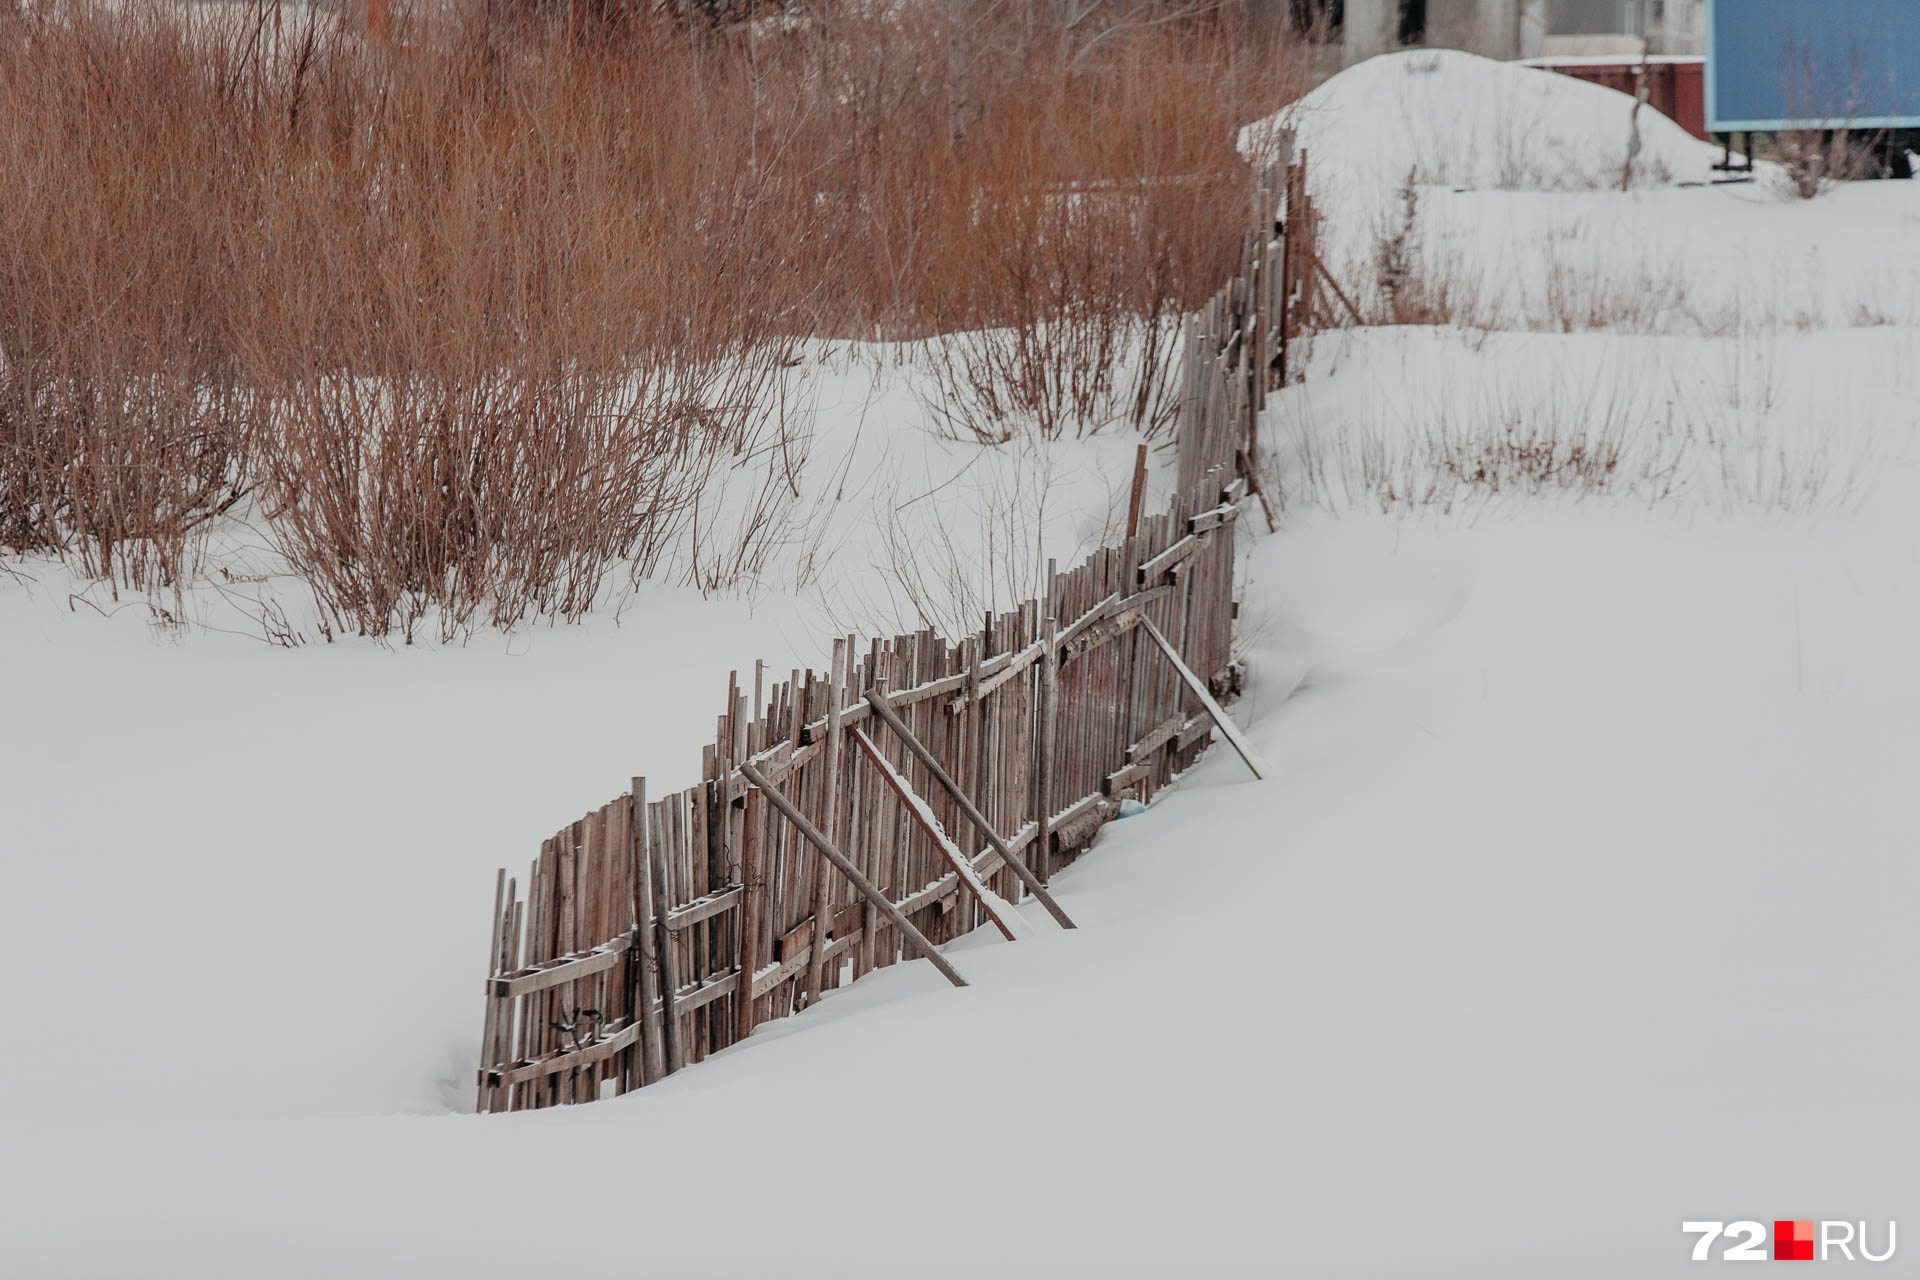 Летом этот забор — серьезная преграда, а зимой его можно просто обойти